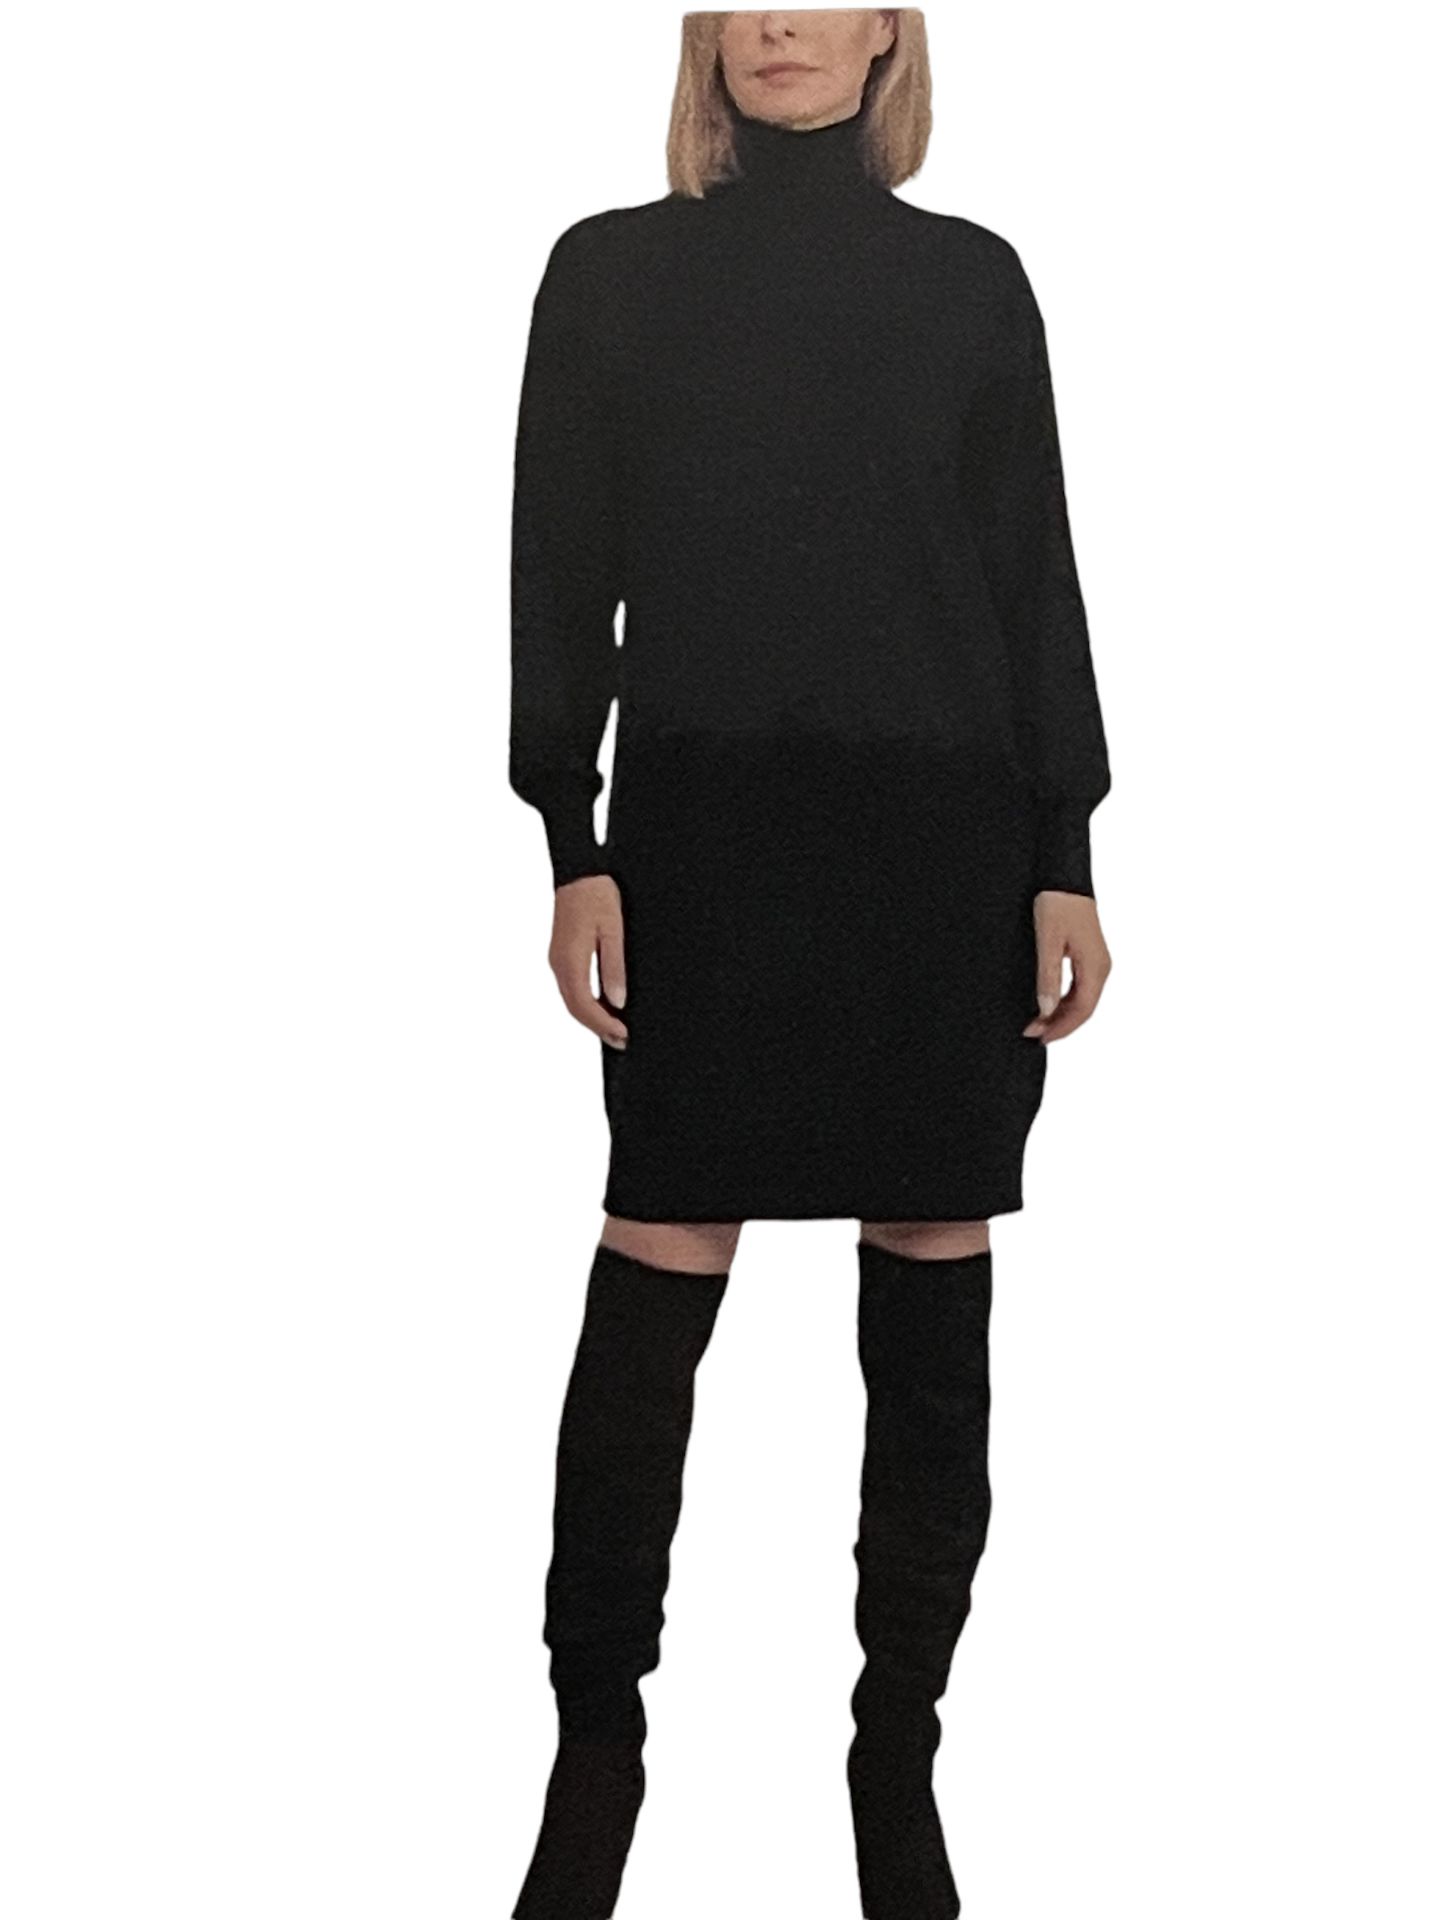 Designer Badgley Mischka Lightweight Fine Knitted Stretchy Jumper Dress UK 14 (L - Image 3 of 6